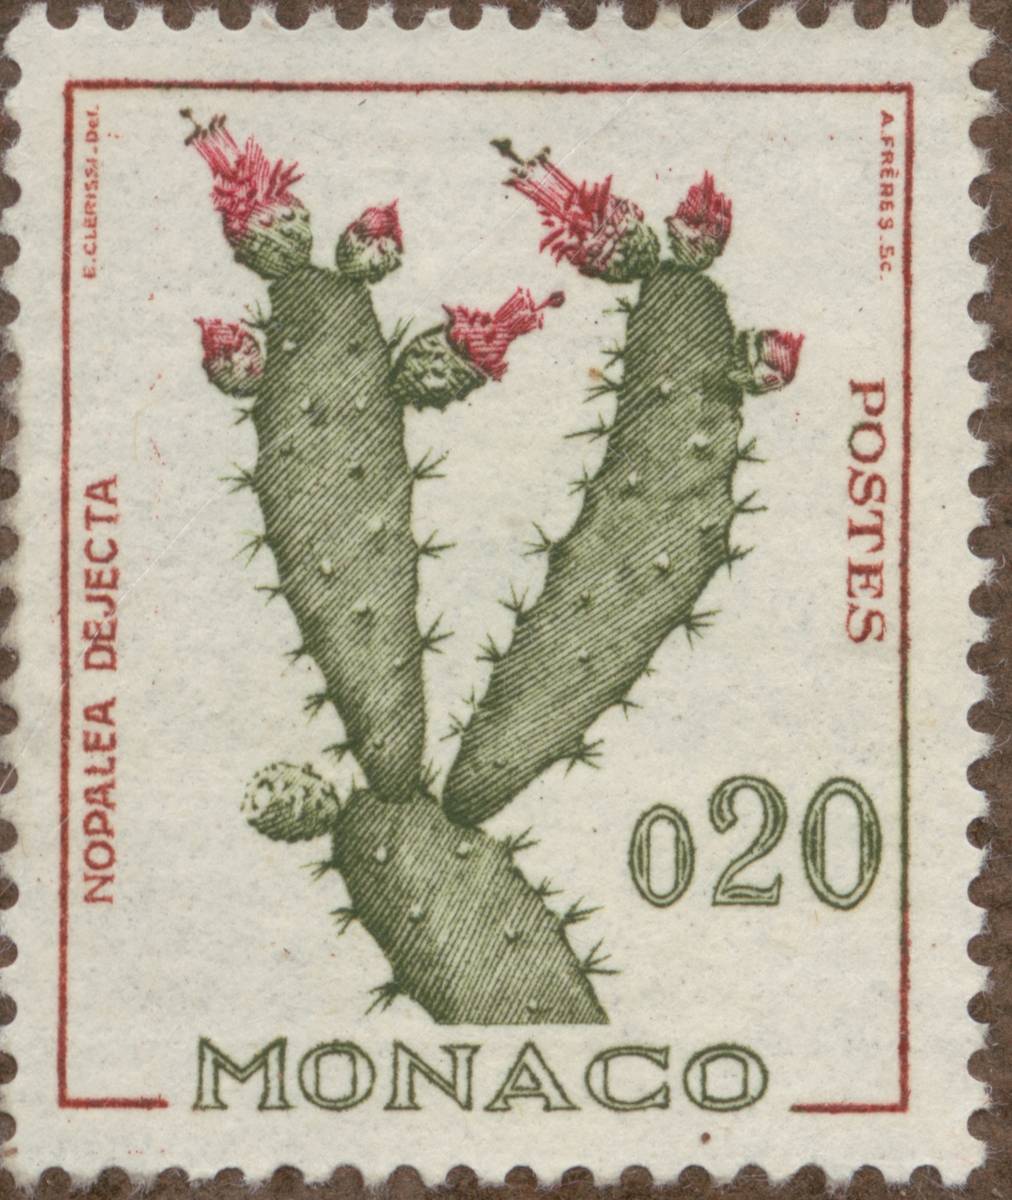 Frimärke ur Gösta Bodmans filatelistiska motivsamling, påbörjad 1950.
Frimärke från Monaco, 1960-62. Motiv av kaktus. "Rainer III serie: diverse".